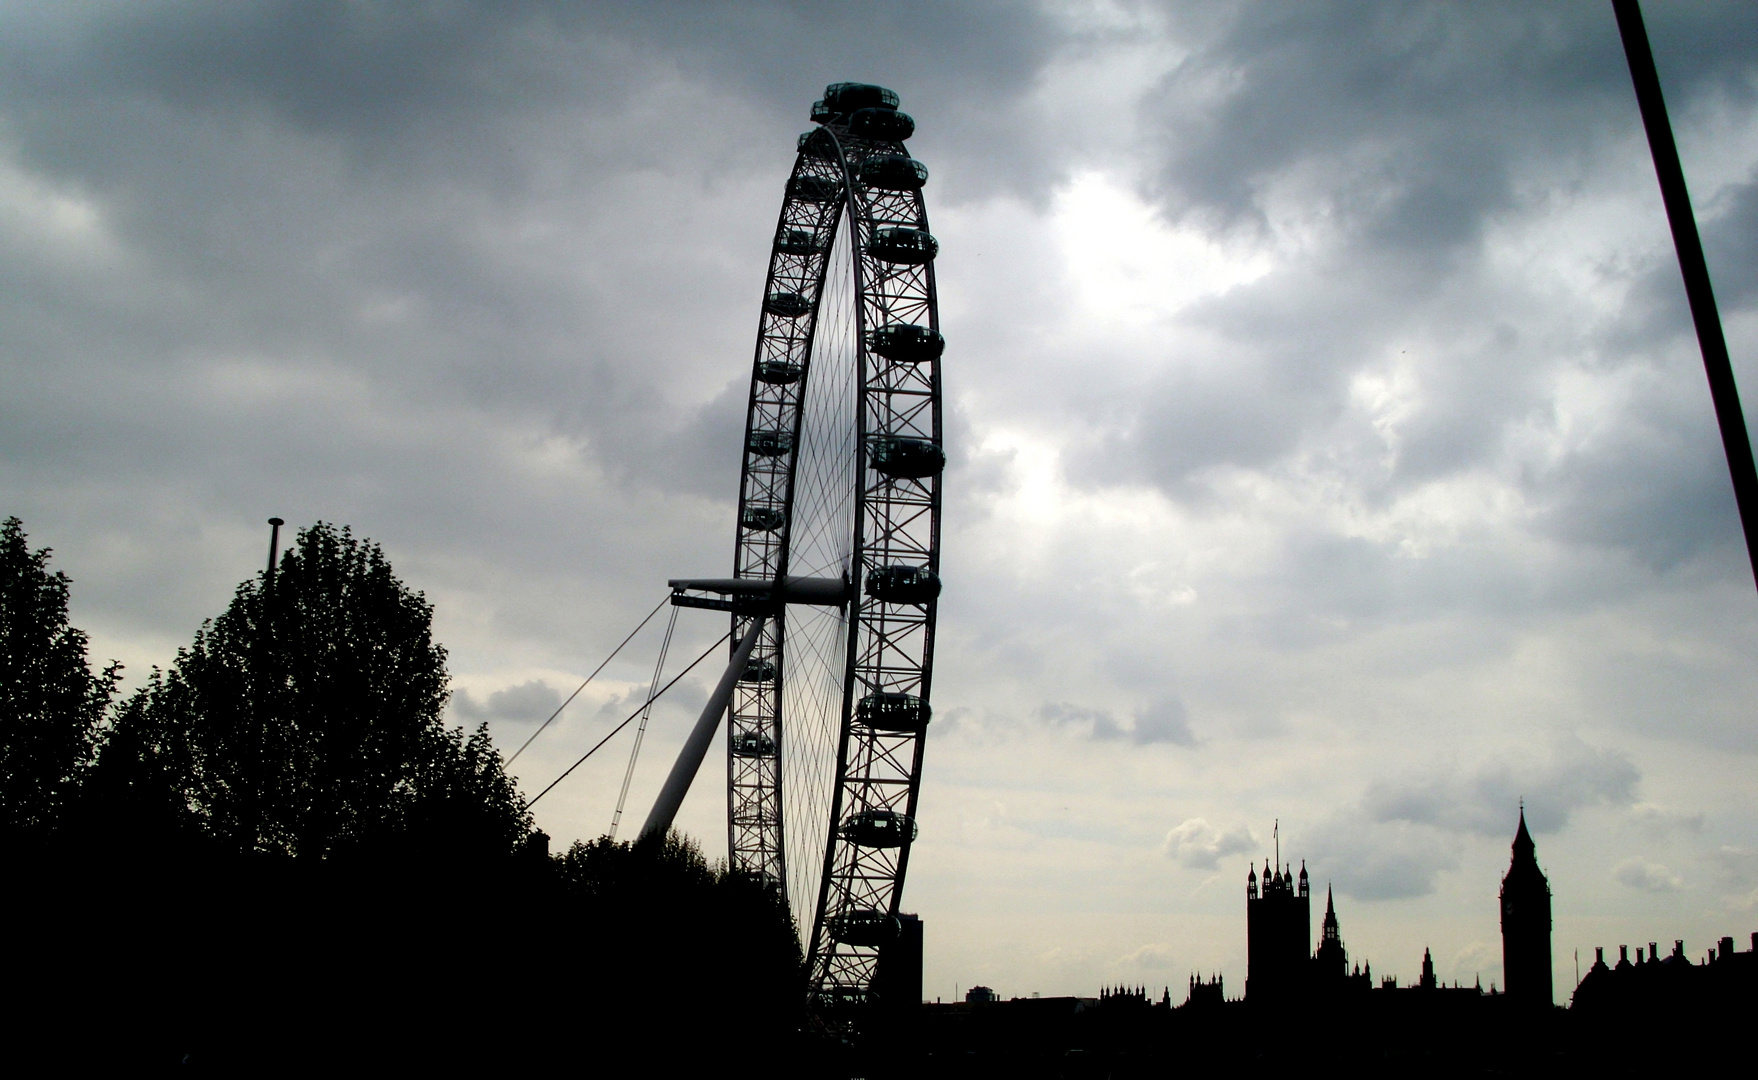 London 2010